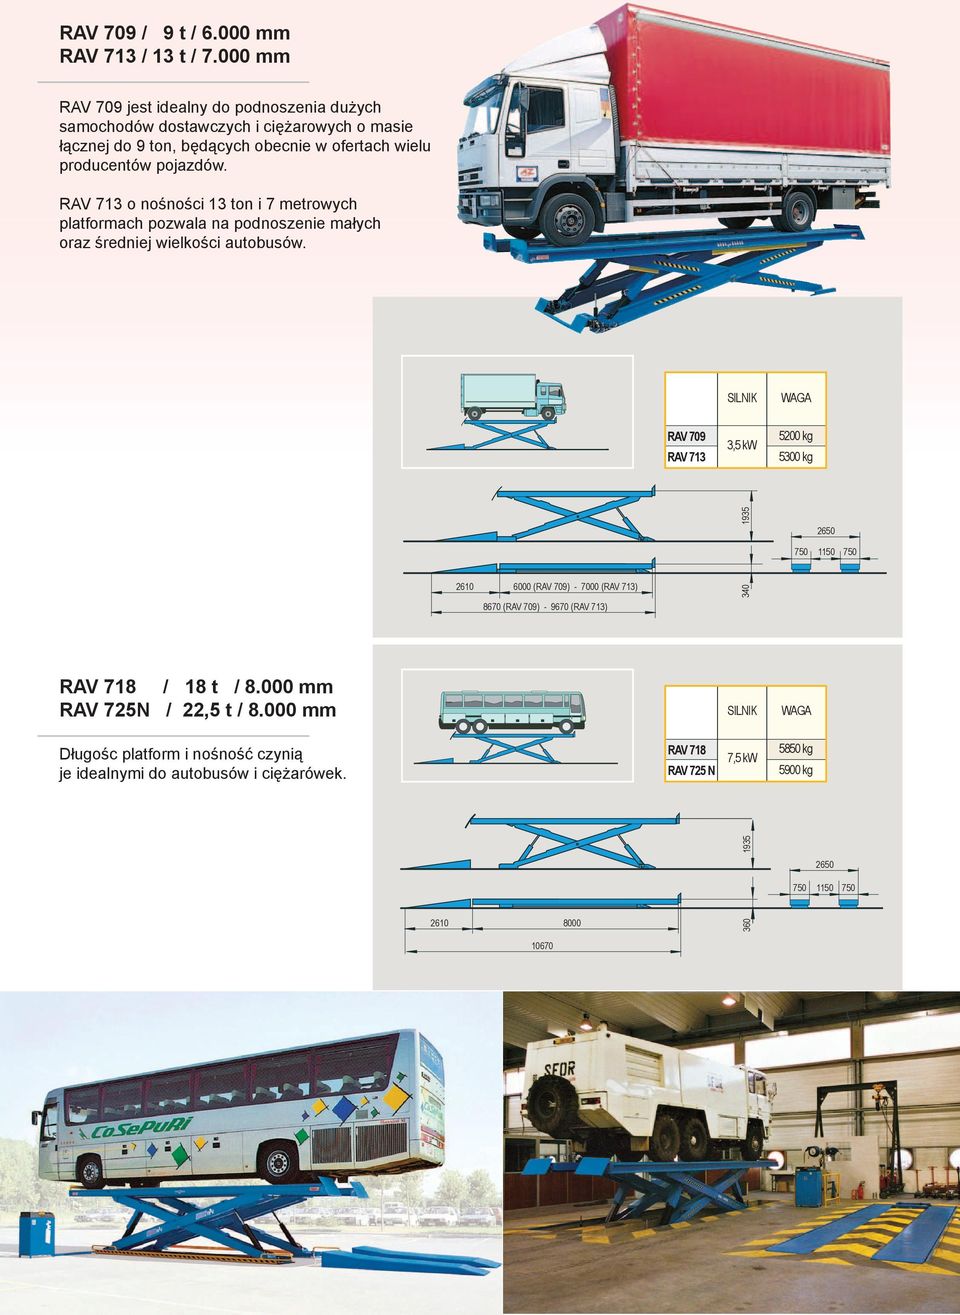 RAV 713 o nośności 13 ton i 7 metrowych platformach pozwala na podnoszenie małych oraz średniej wielkości autobusów.